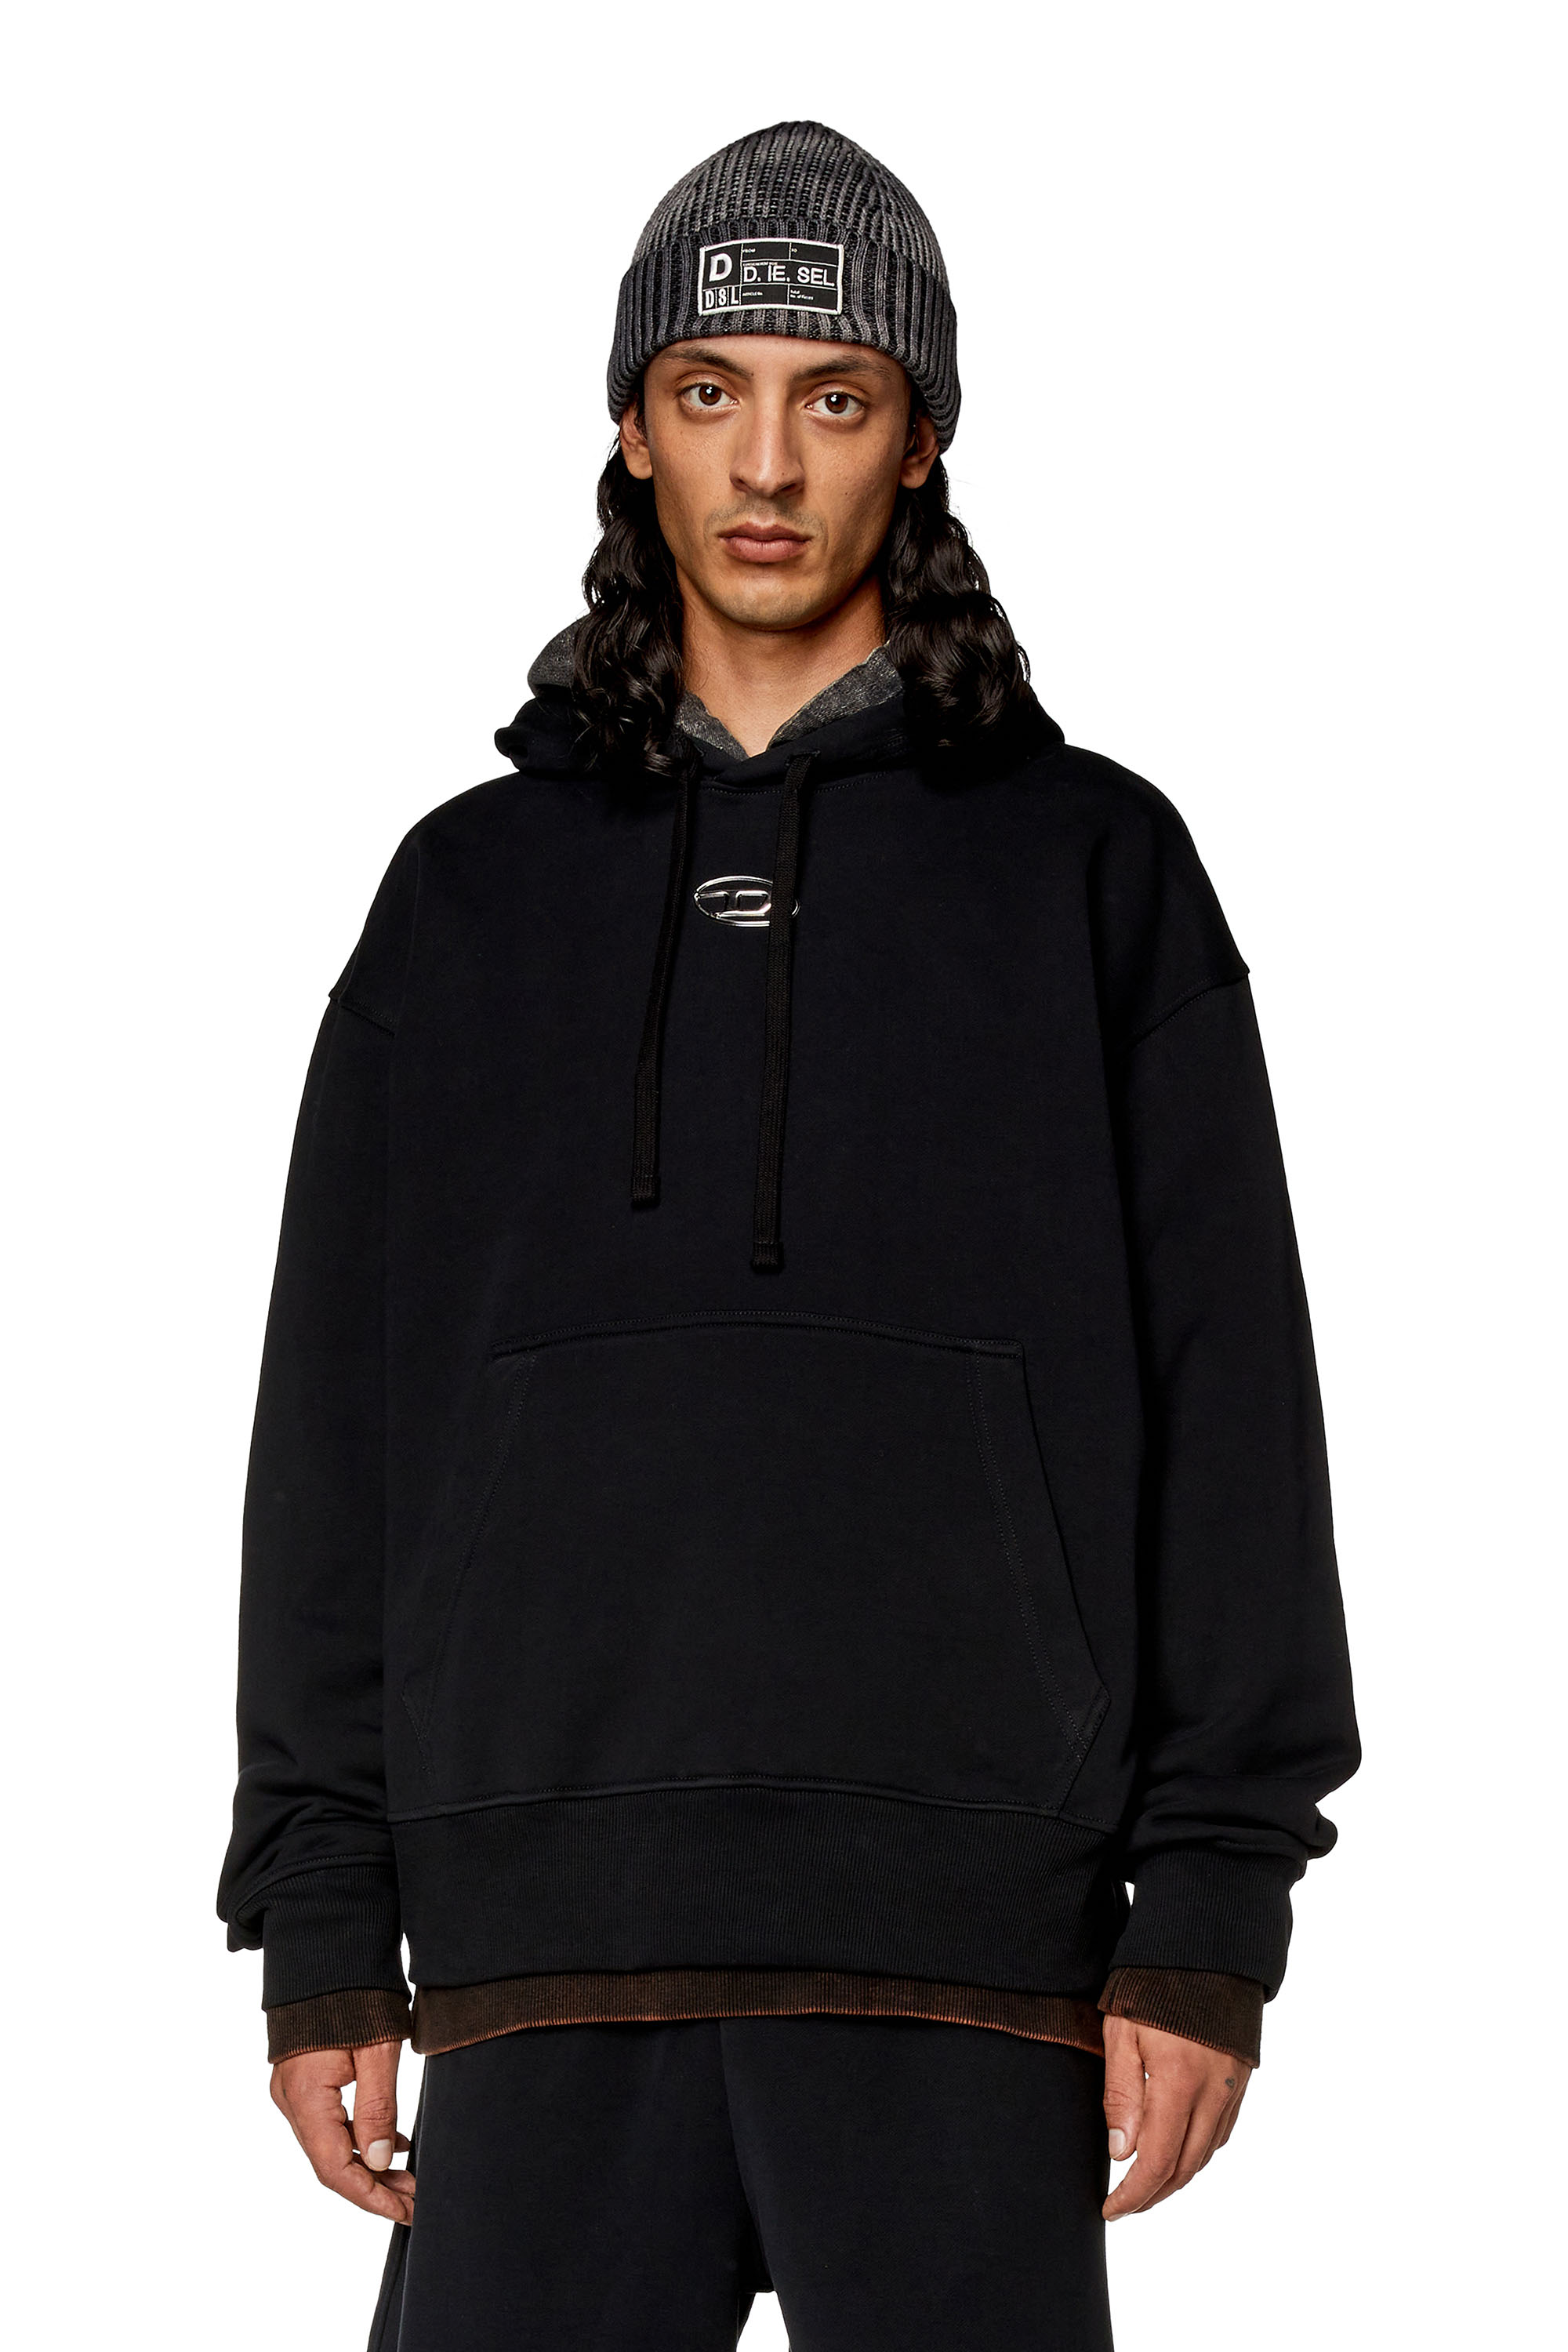 Diesel - Sweat-shirt à capuche oversize avec logo métallisé - Pull Cotton - Homme - Noir